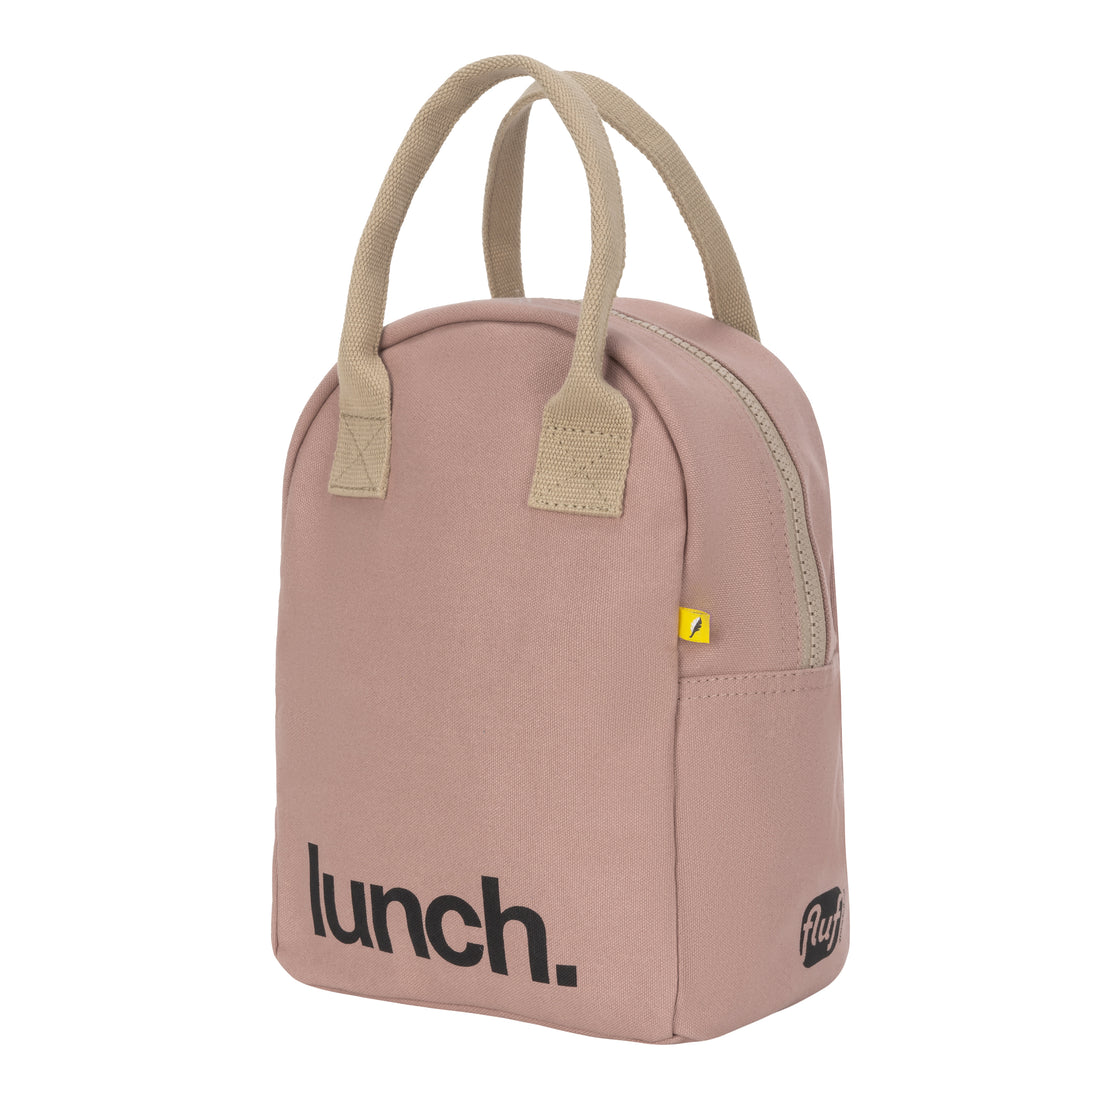 fluf-zipper-lunch-bag-mauve-pink- (2)